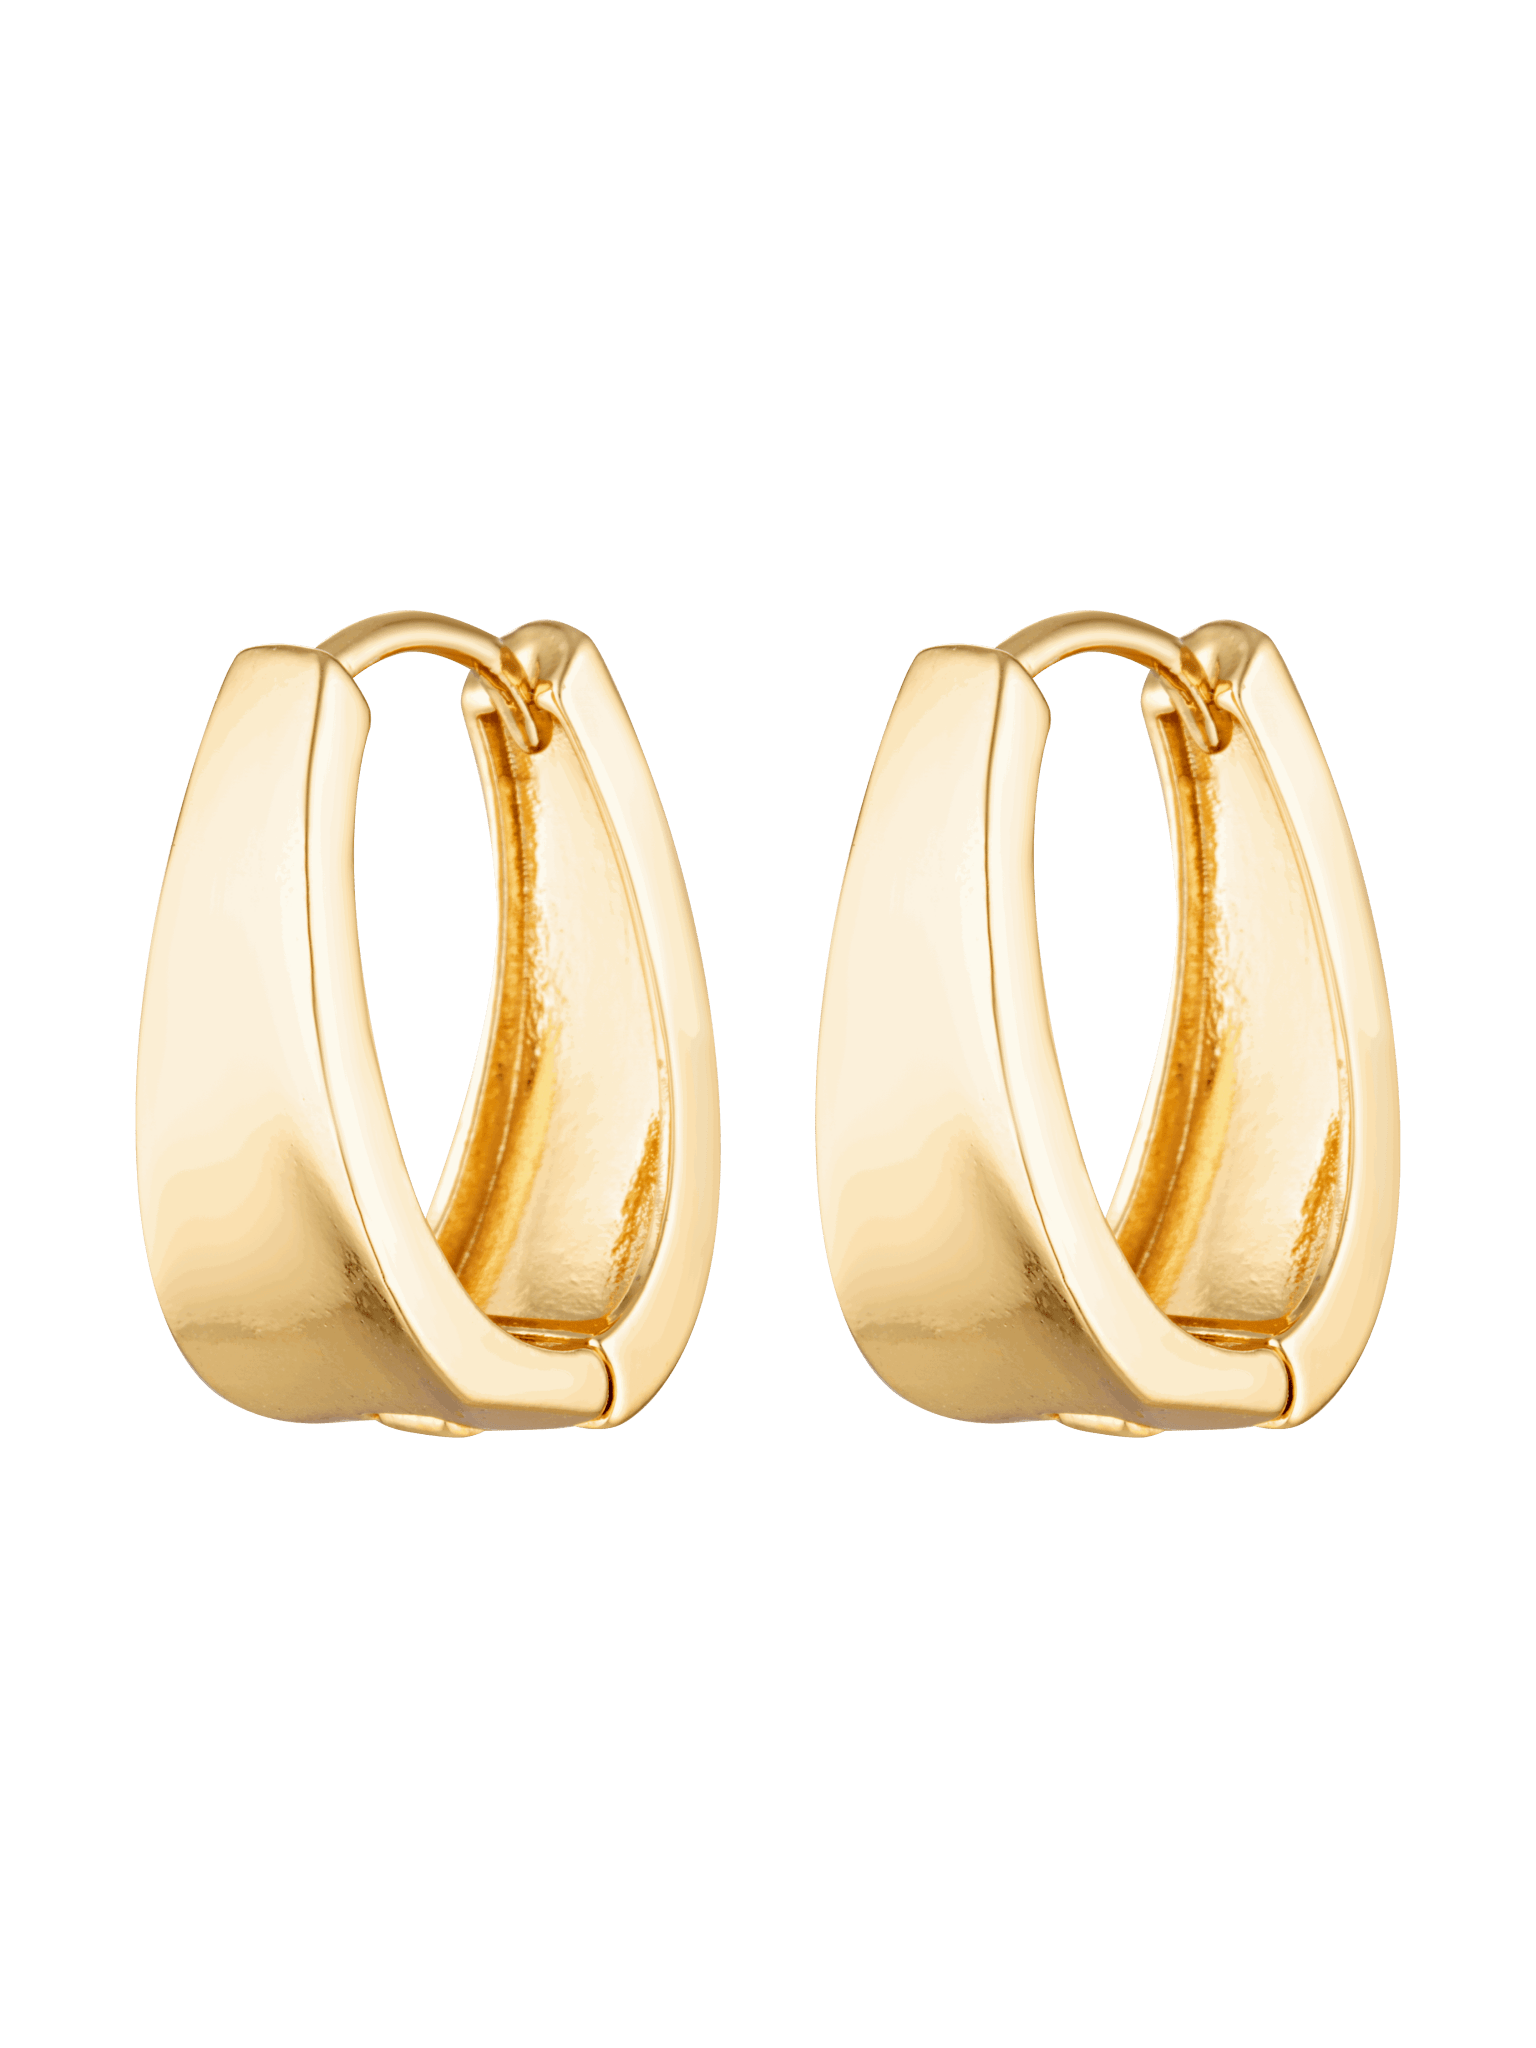 Cinnamon Hoops are 18k gold Fill hoop earrings 